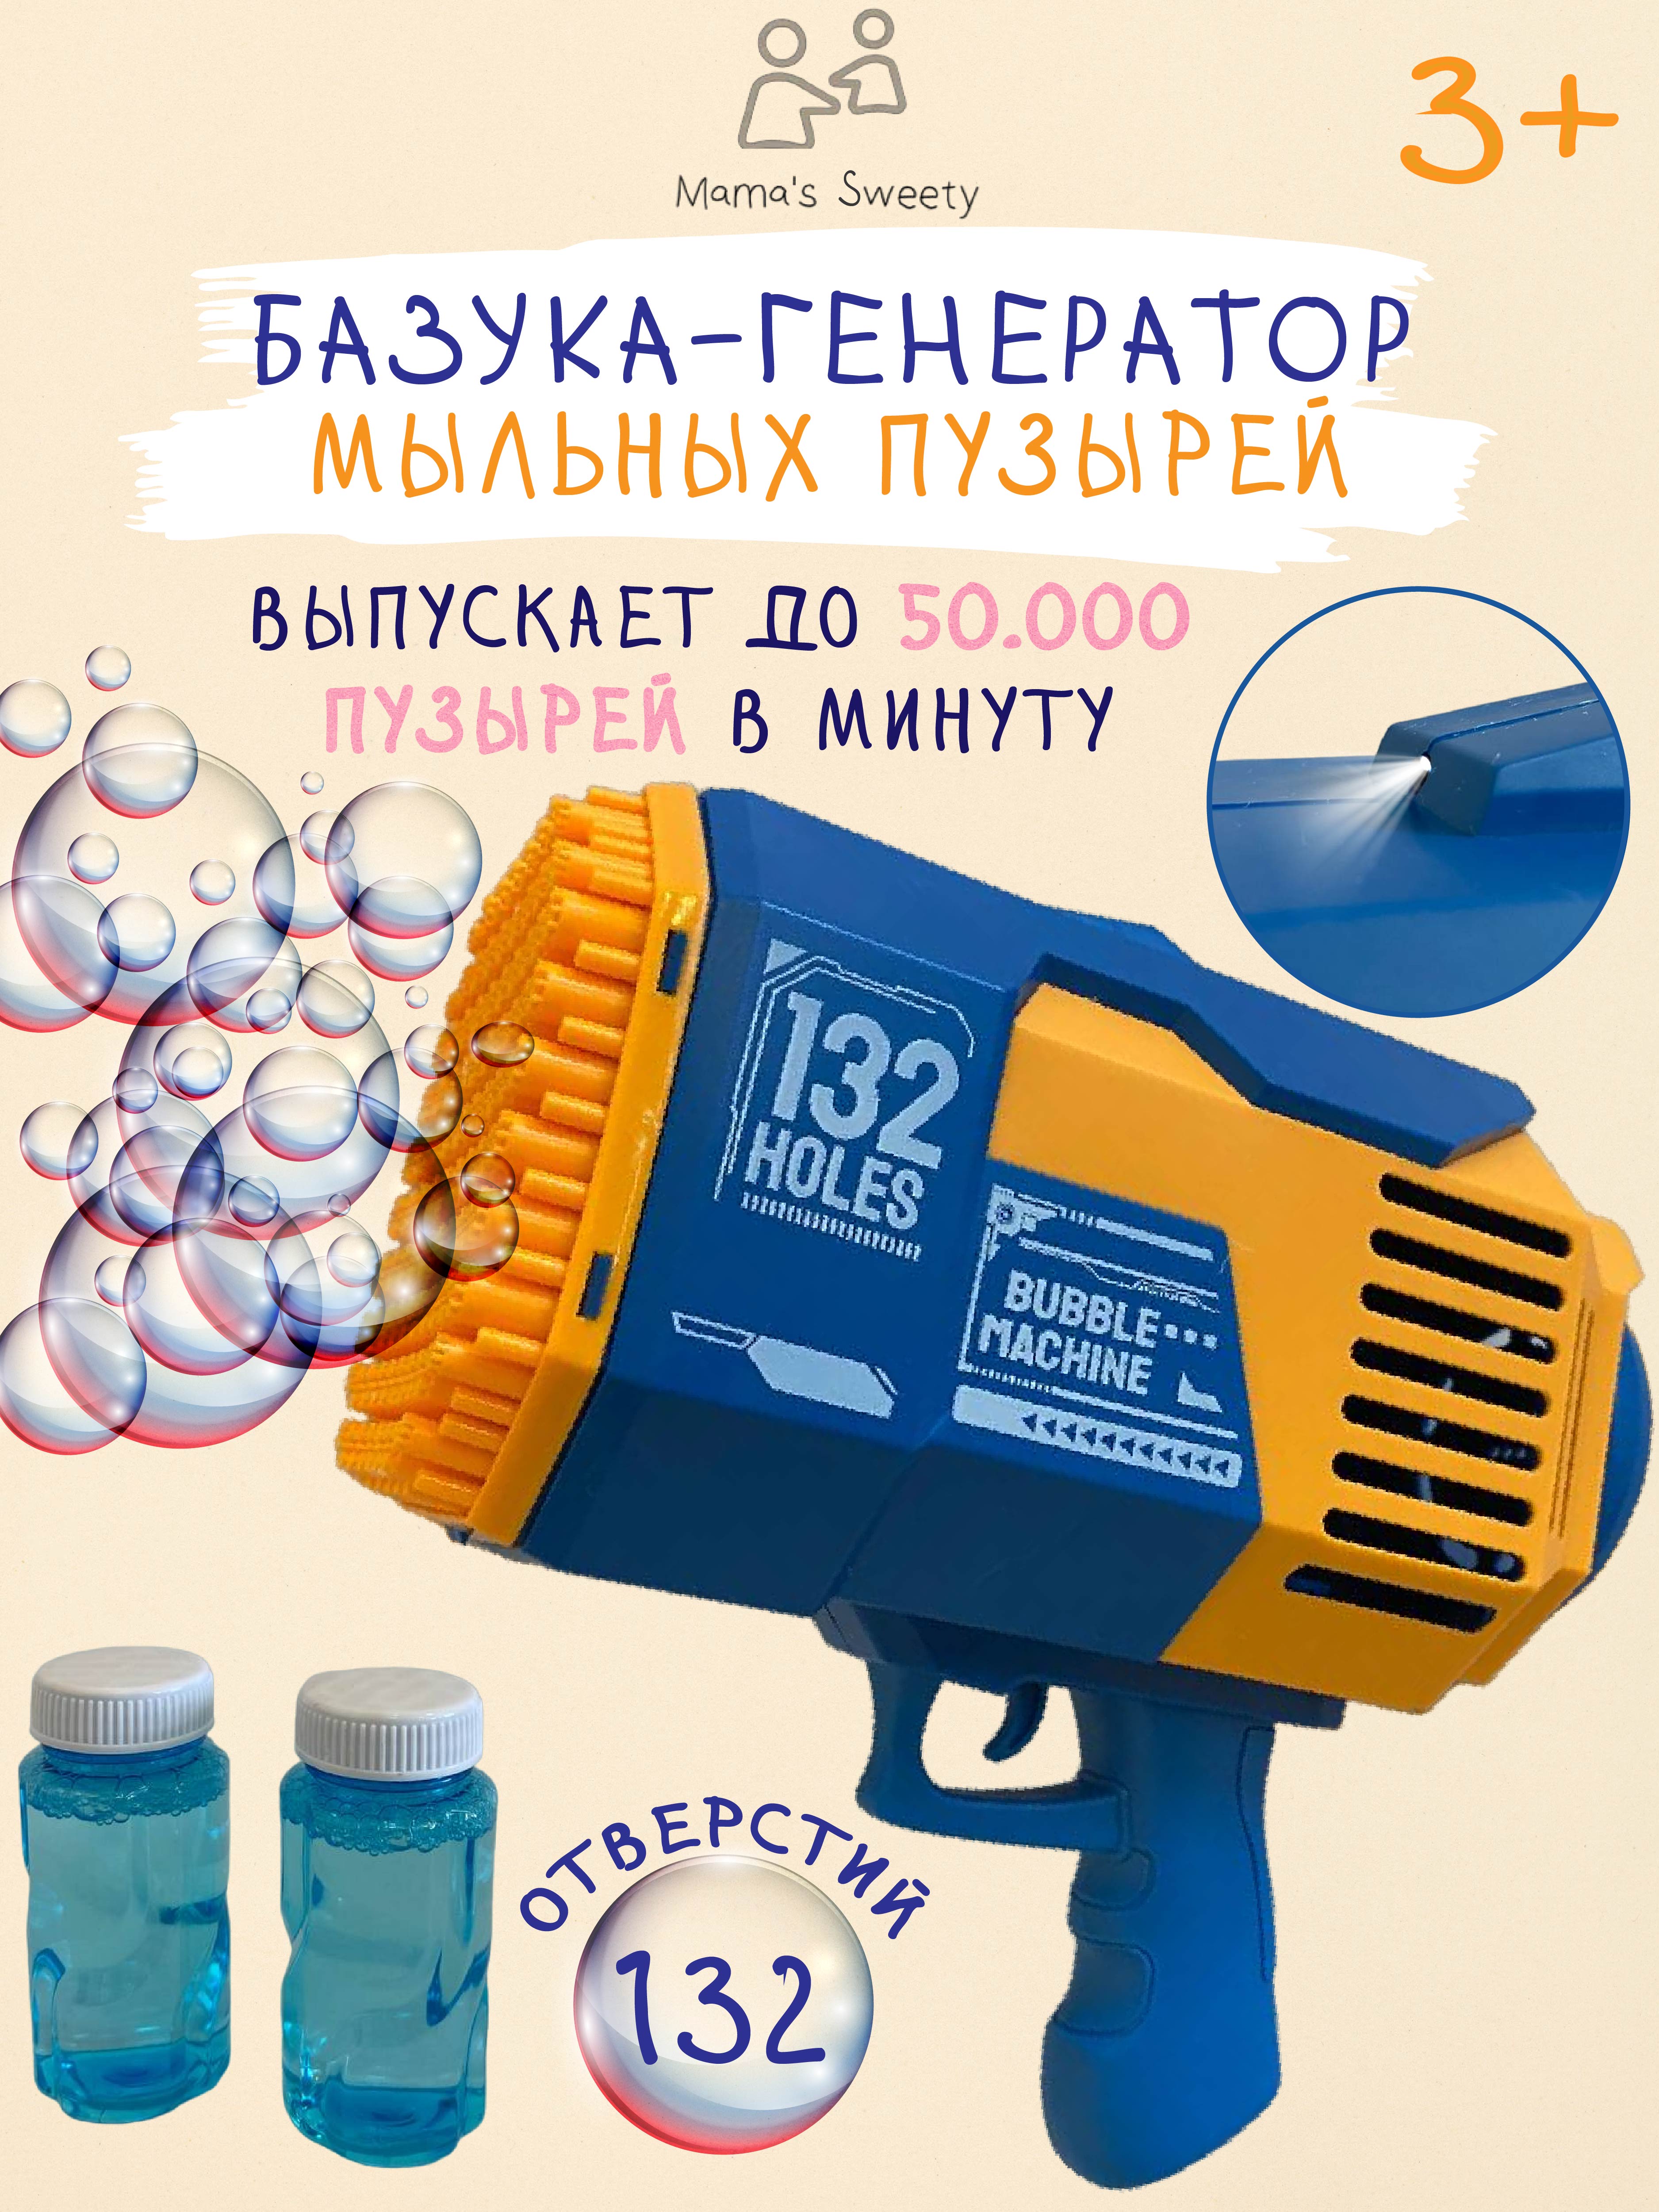 Базука-пистолет Mamas Sweety генератор мыльных пузырей синий - фото 1